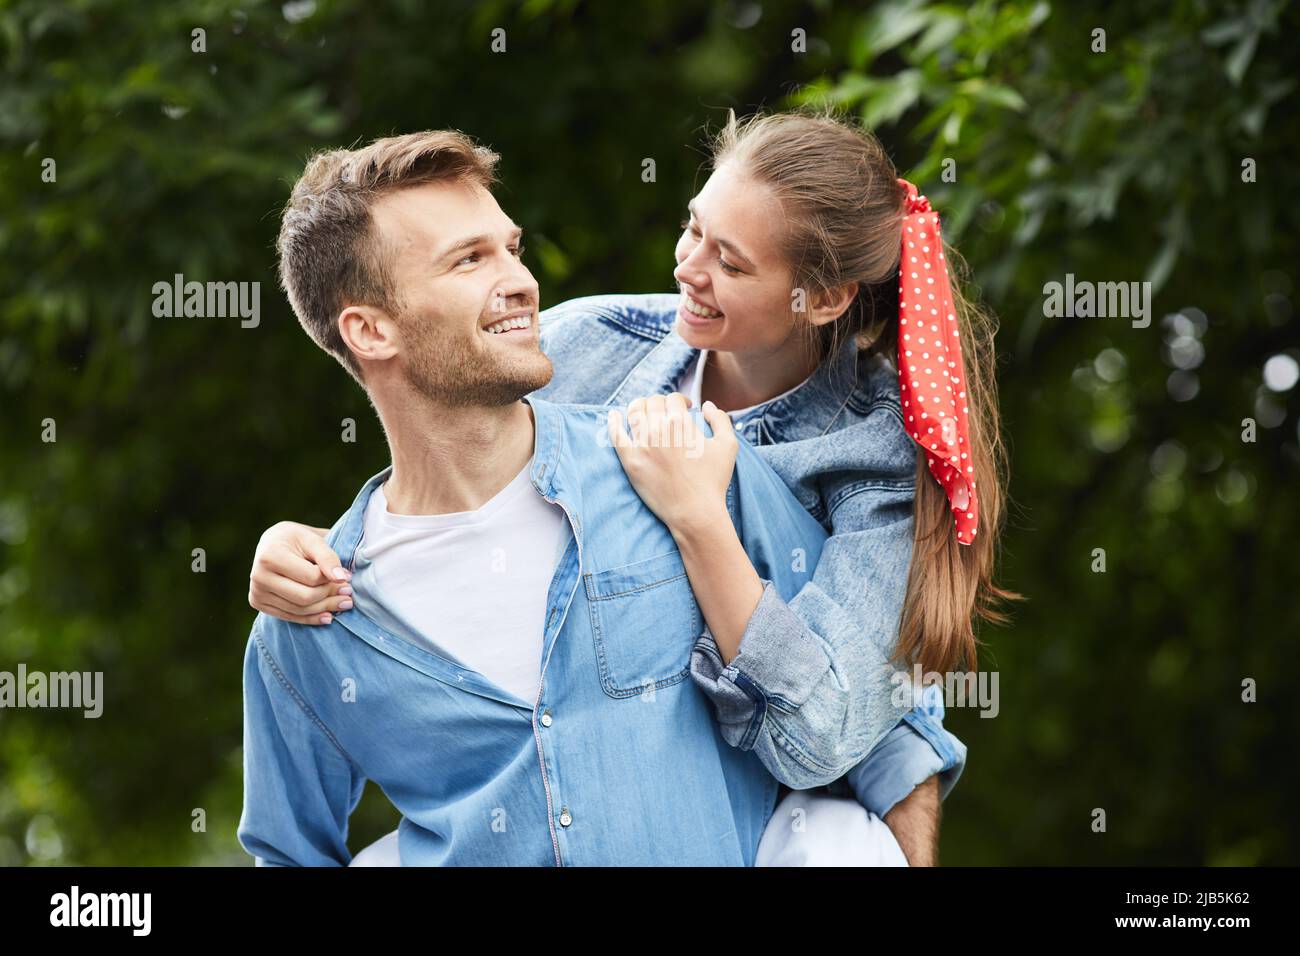 Positivo bel ragazzo giovane in denim camicia guardando la ragazza mentre dando piggyback a lei nel parco estivo Foto Stock